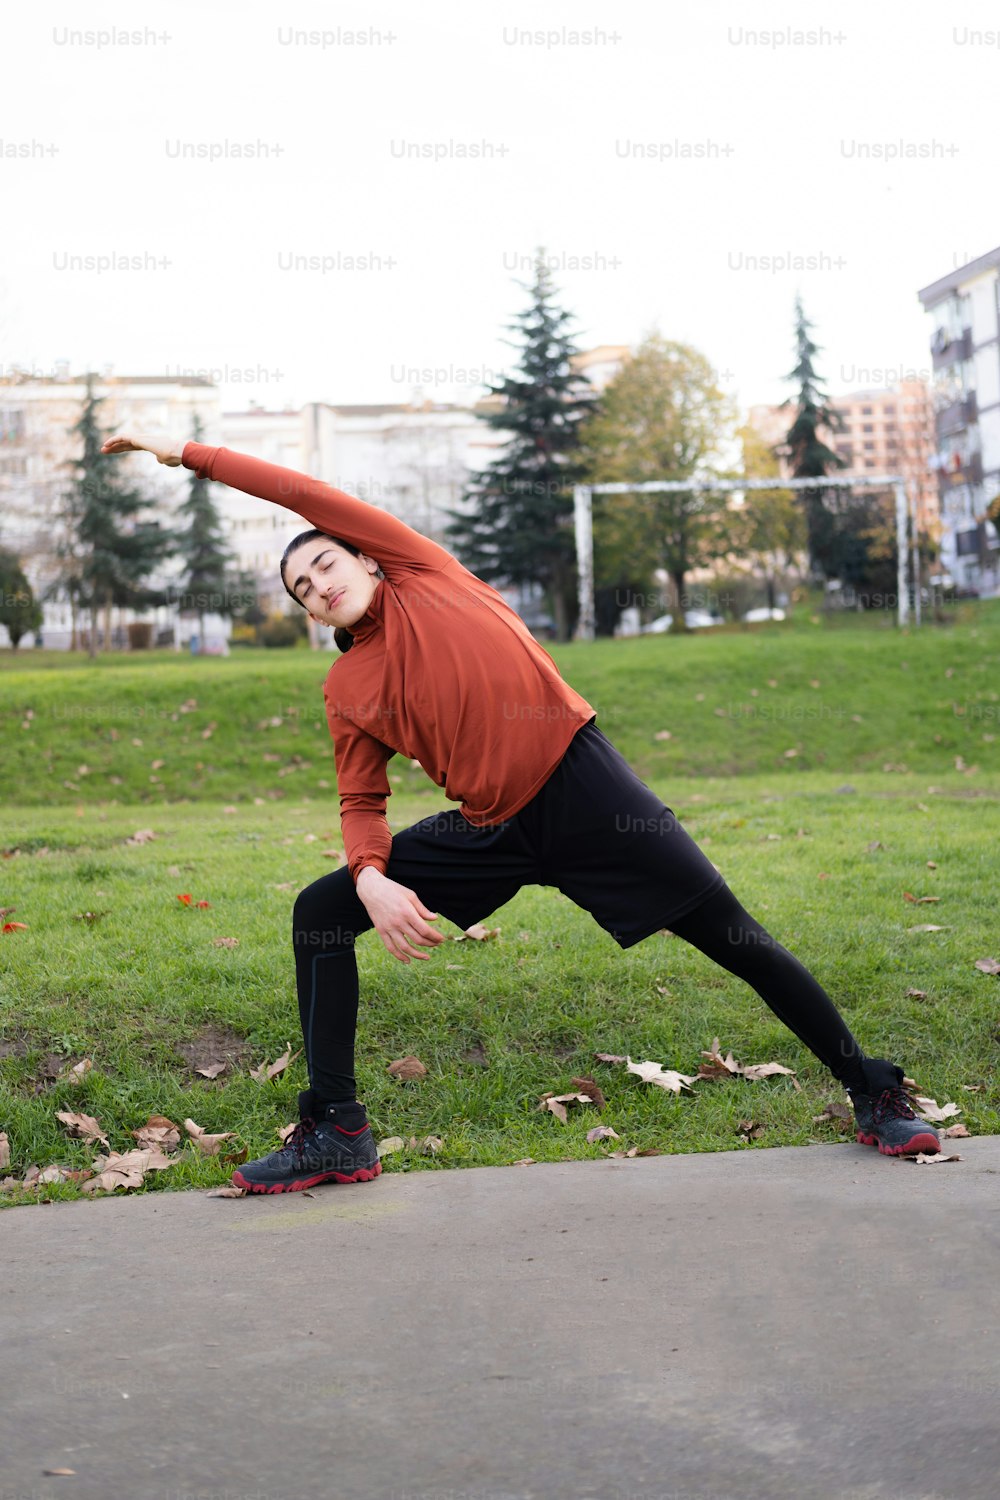 Un hombre con una camisa roja está haciendo una pose de yoga